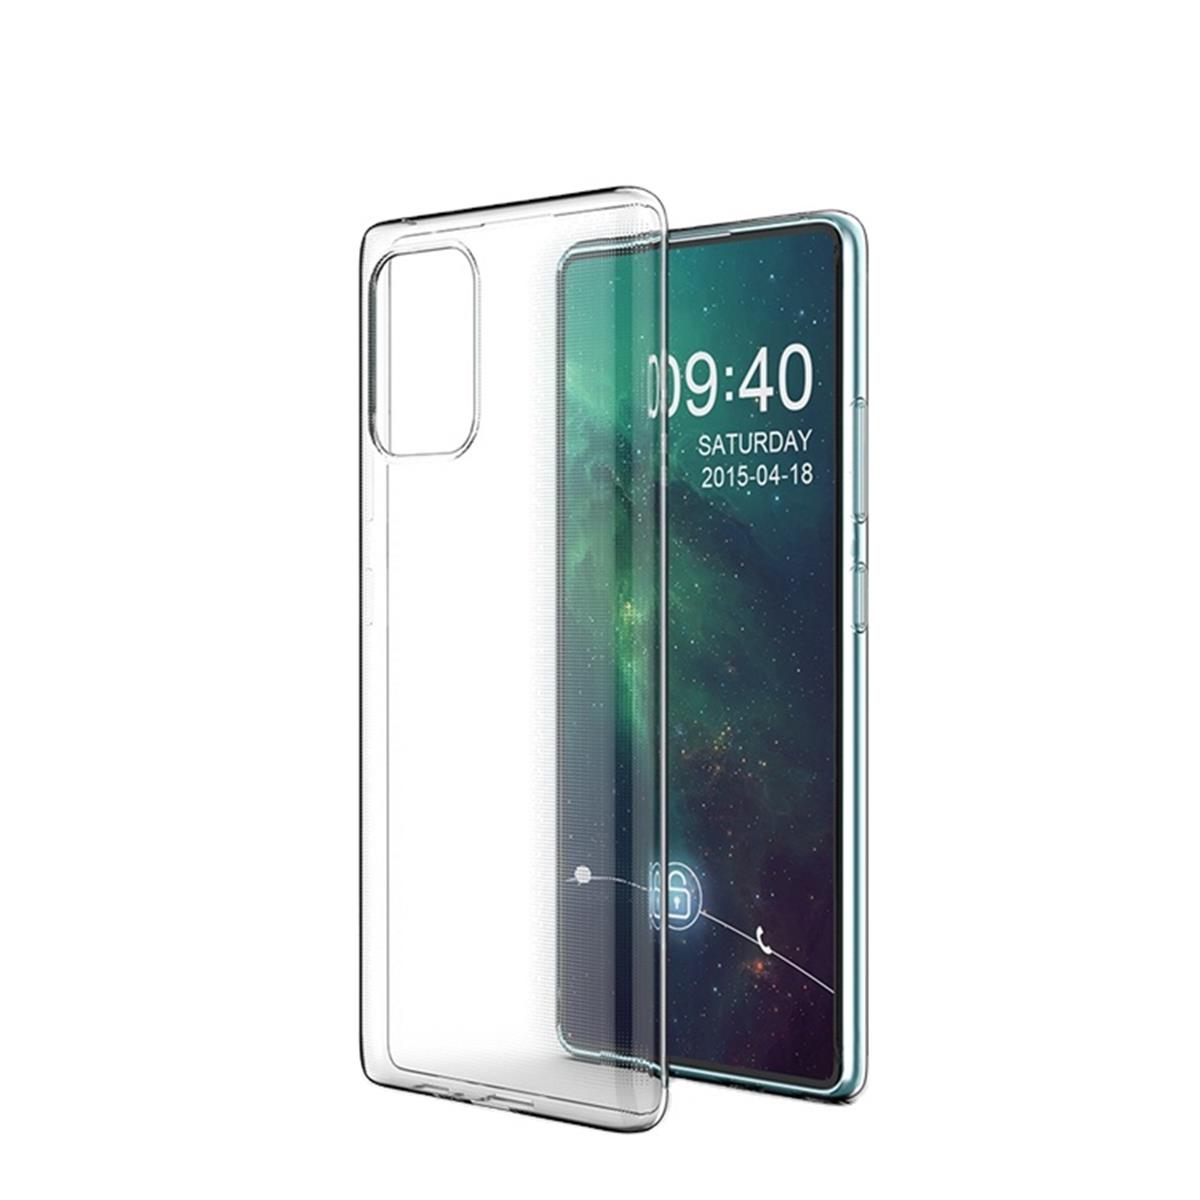 Hülle für Samsung Galaxy S10 Lite Handyhülle Silikon Cover Bumper Case klar